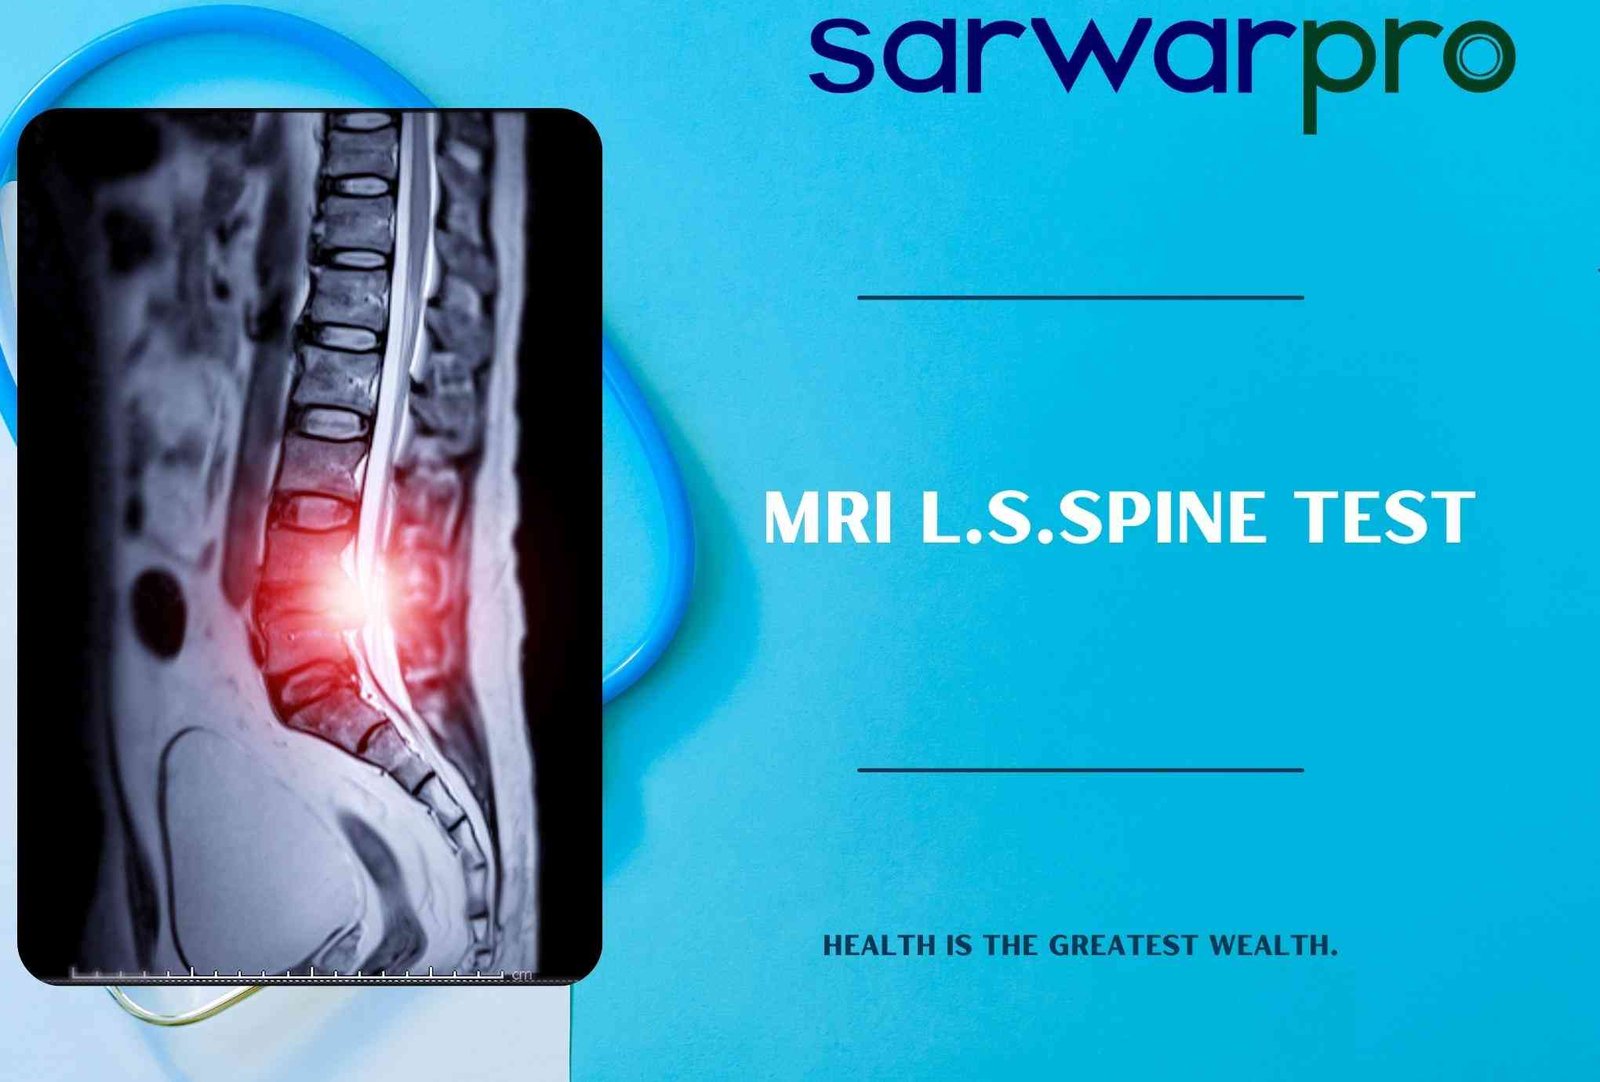 33405mri-l.s.spine-test.jpg